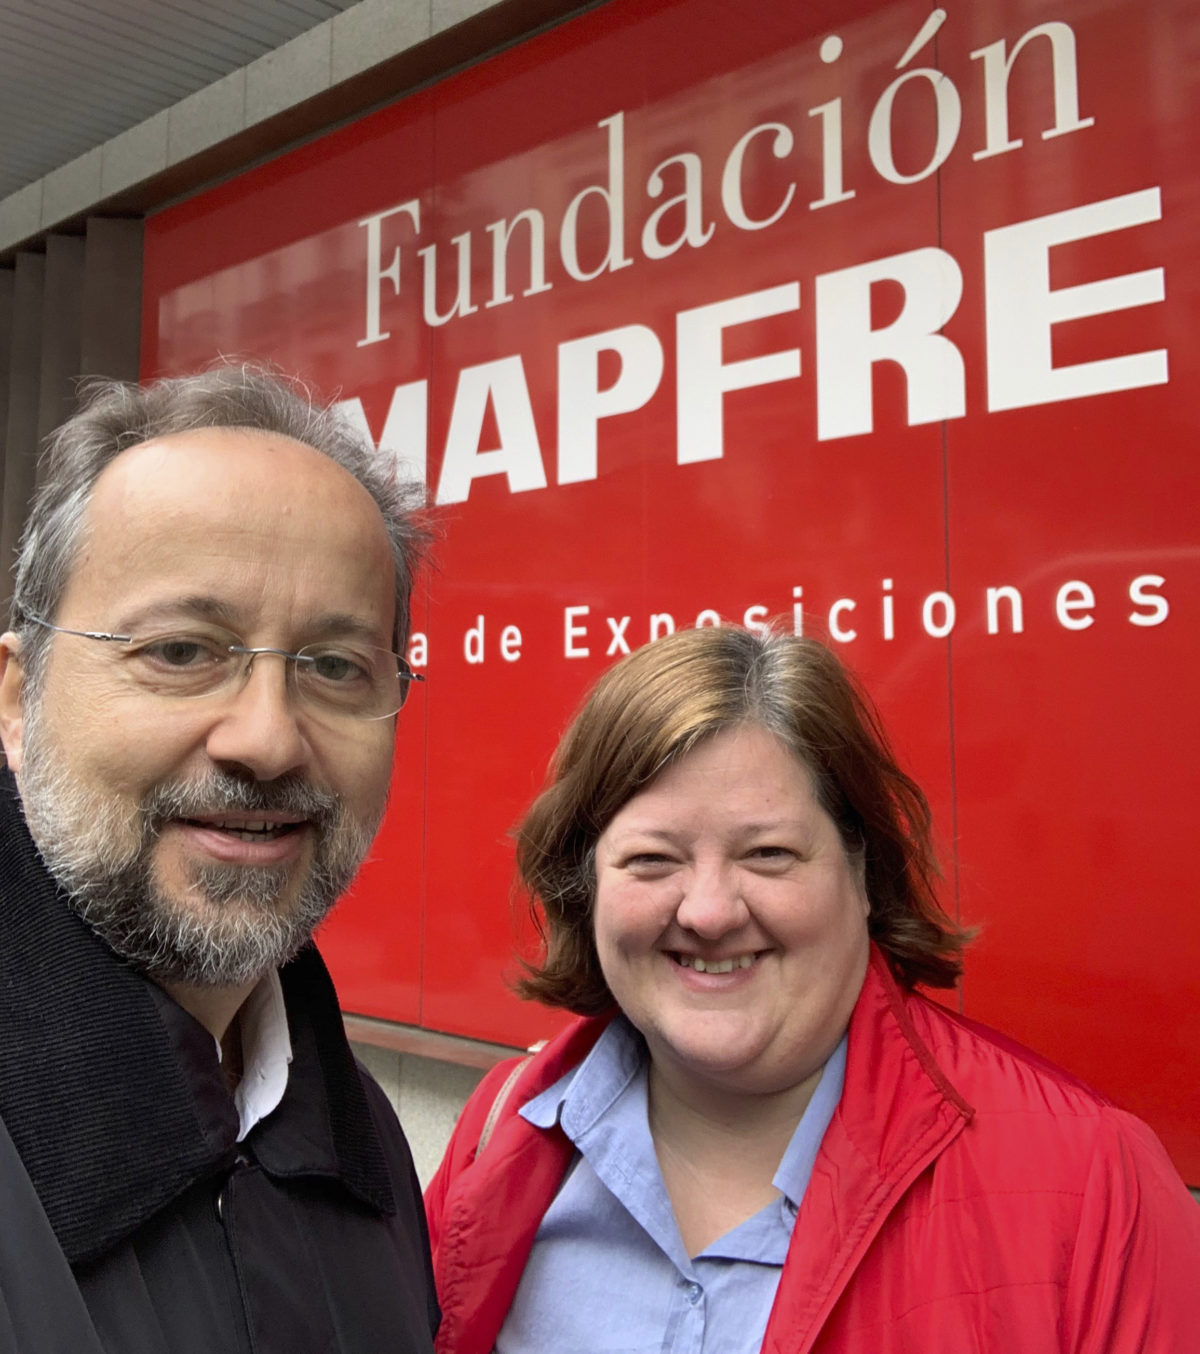 Buscando alianza con Fundación Mapfre.